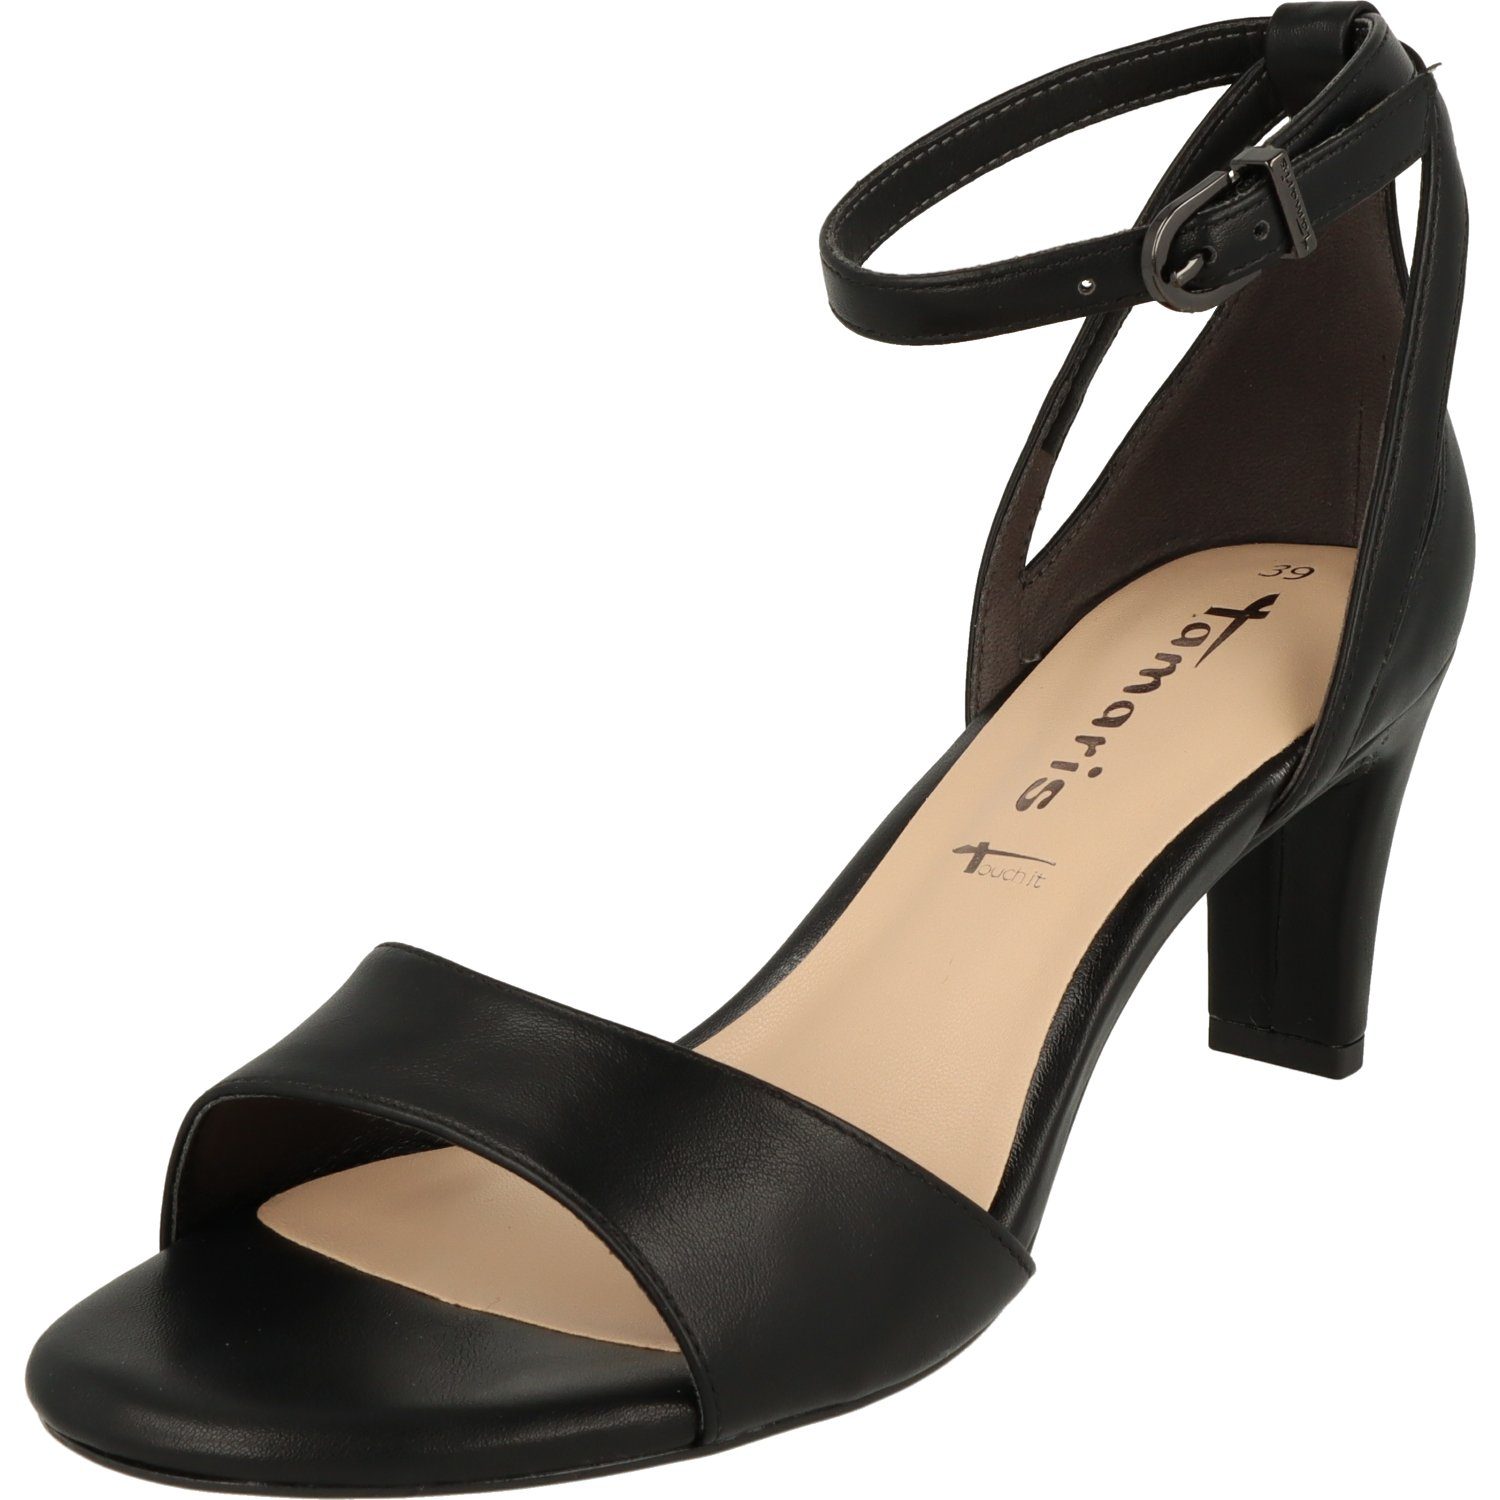 Damen Matt Vegan 1-28327-20 elegante Tamaris Pumps Schuhe High-Heel-Pumps Abendschuhe Black